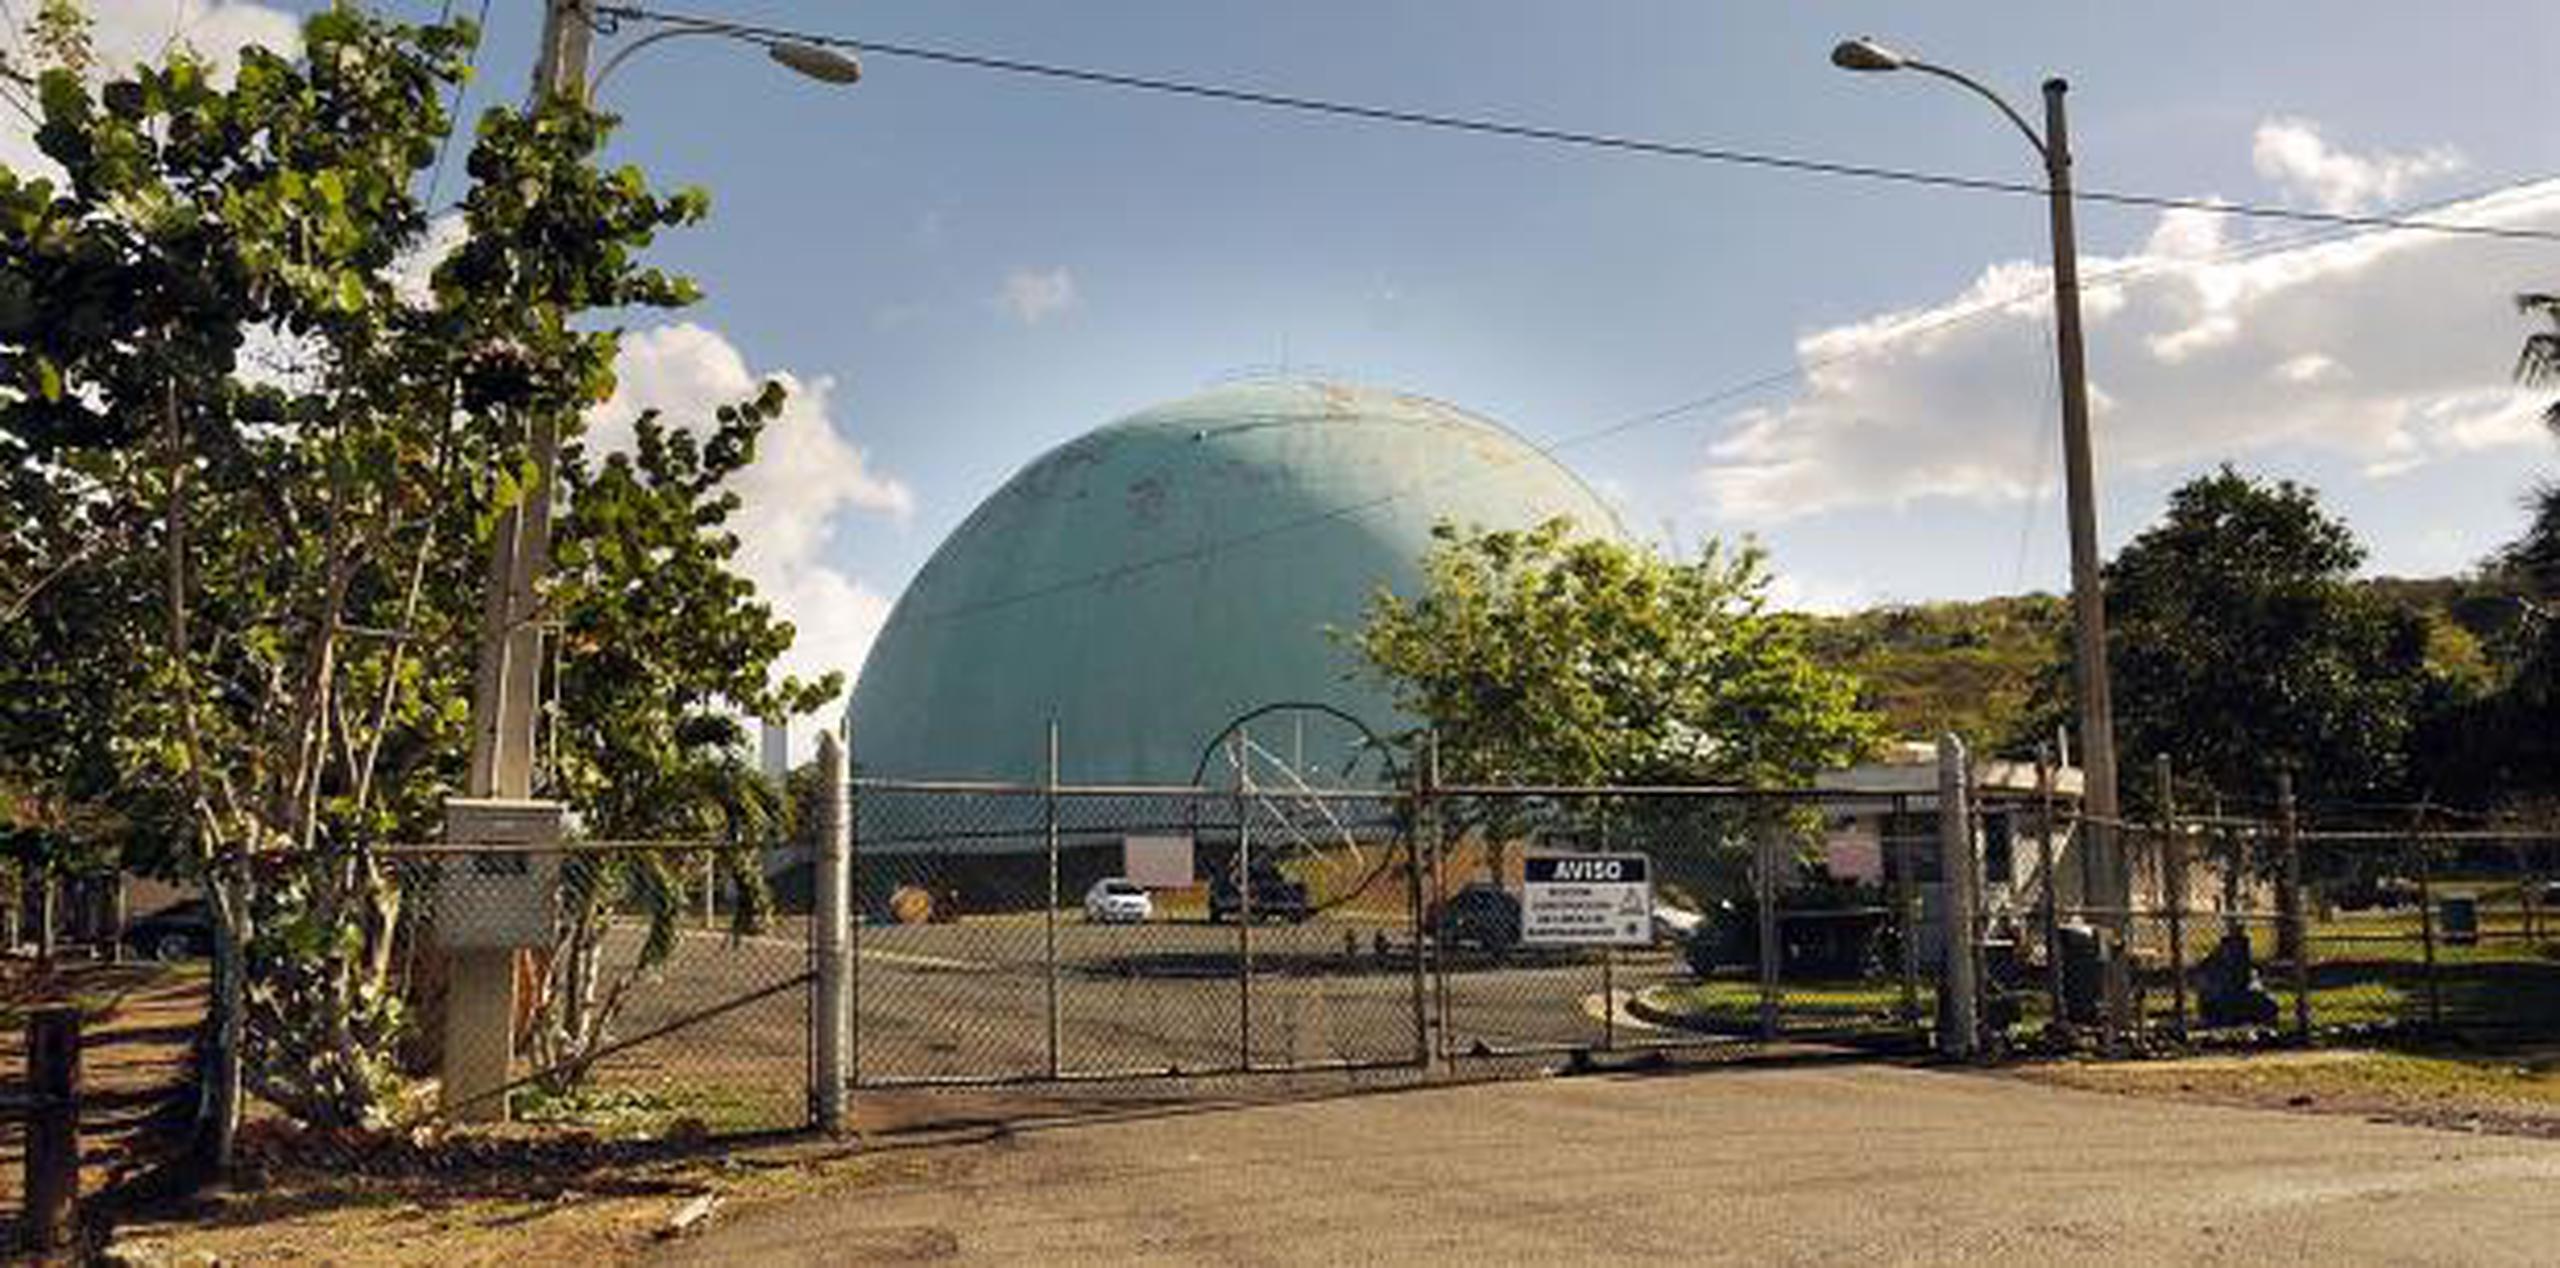 Las operaciones de la antigua planta nuclear Bonus cesaron en 1968. (Archivo)